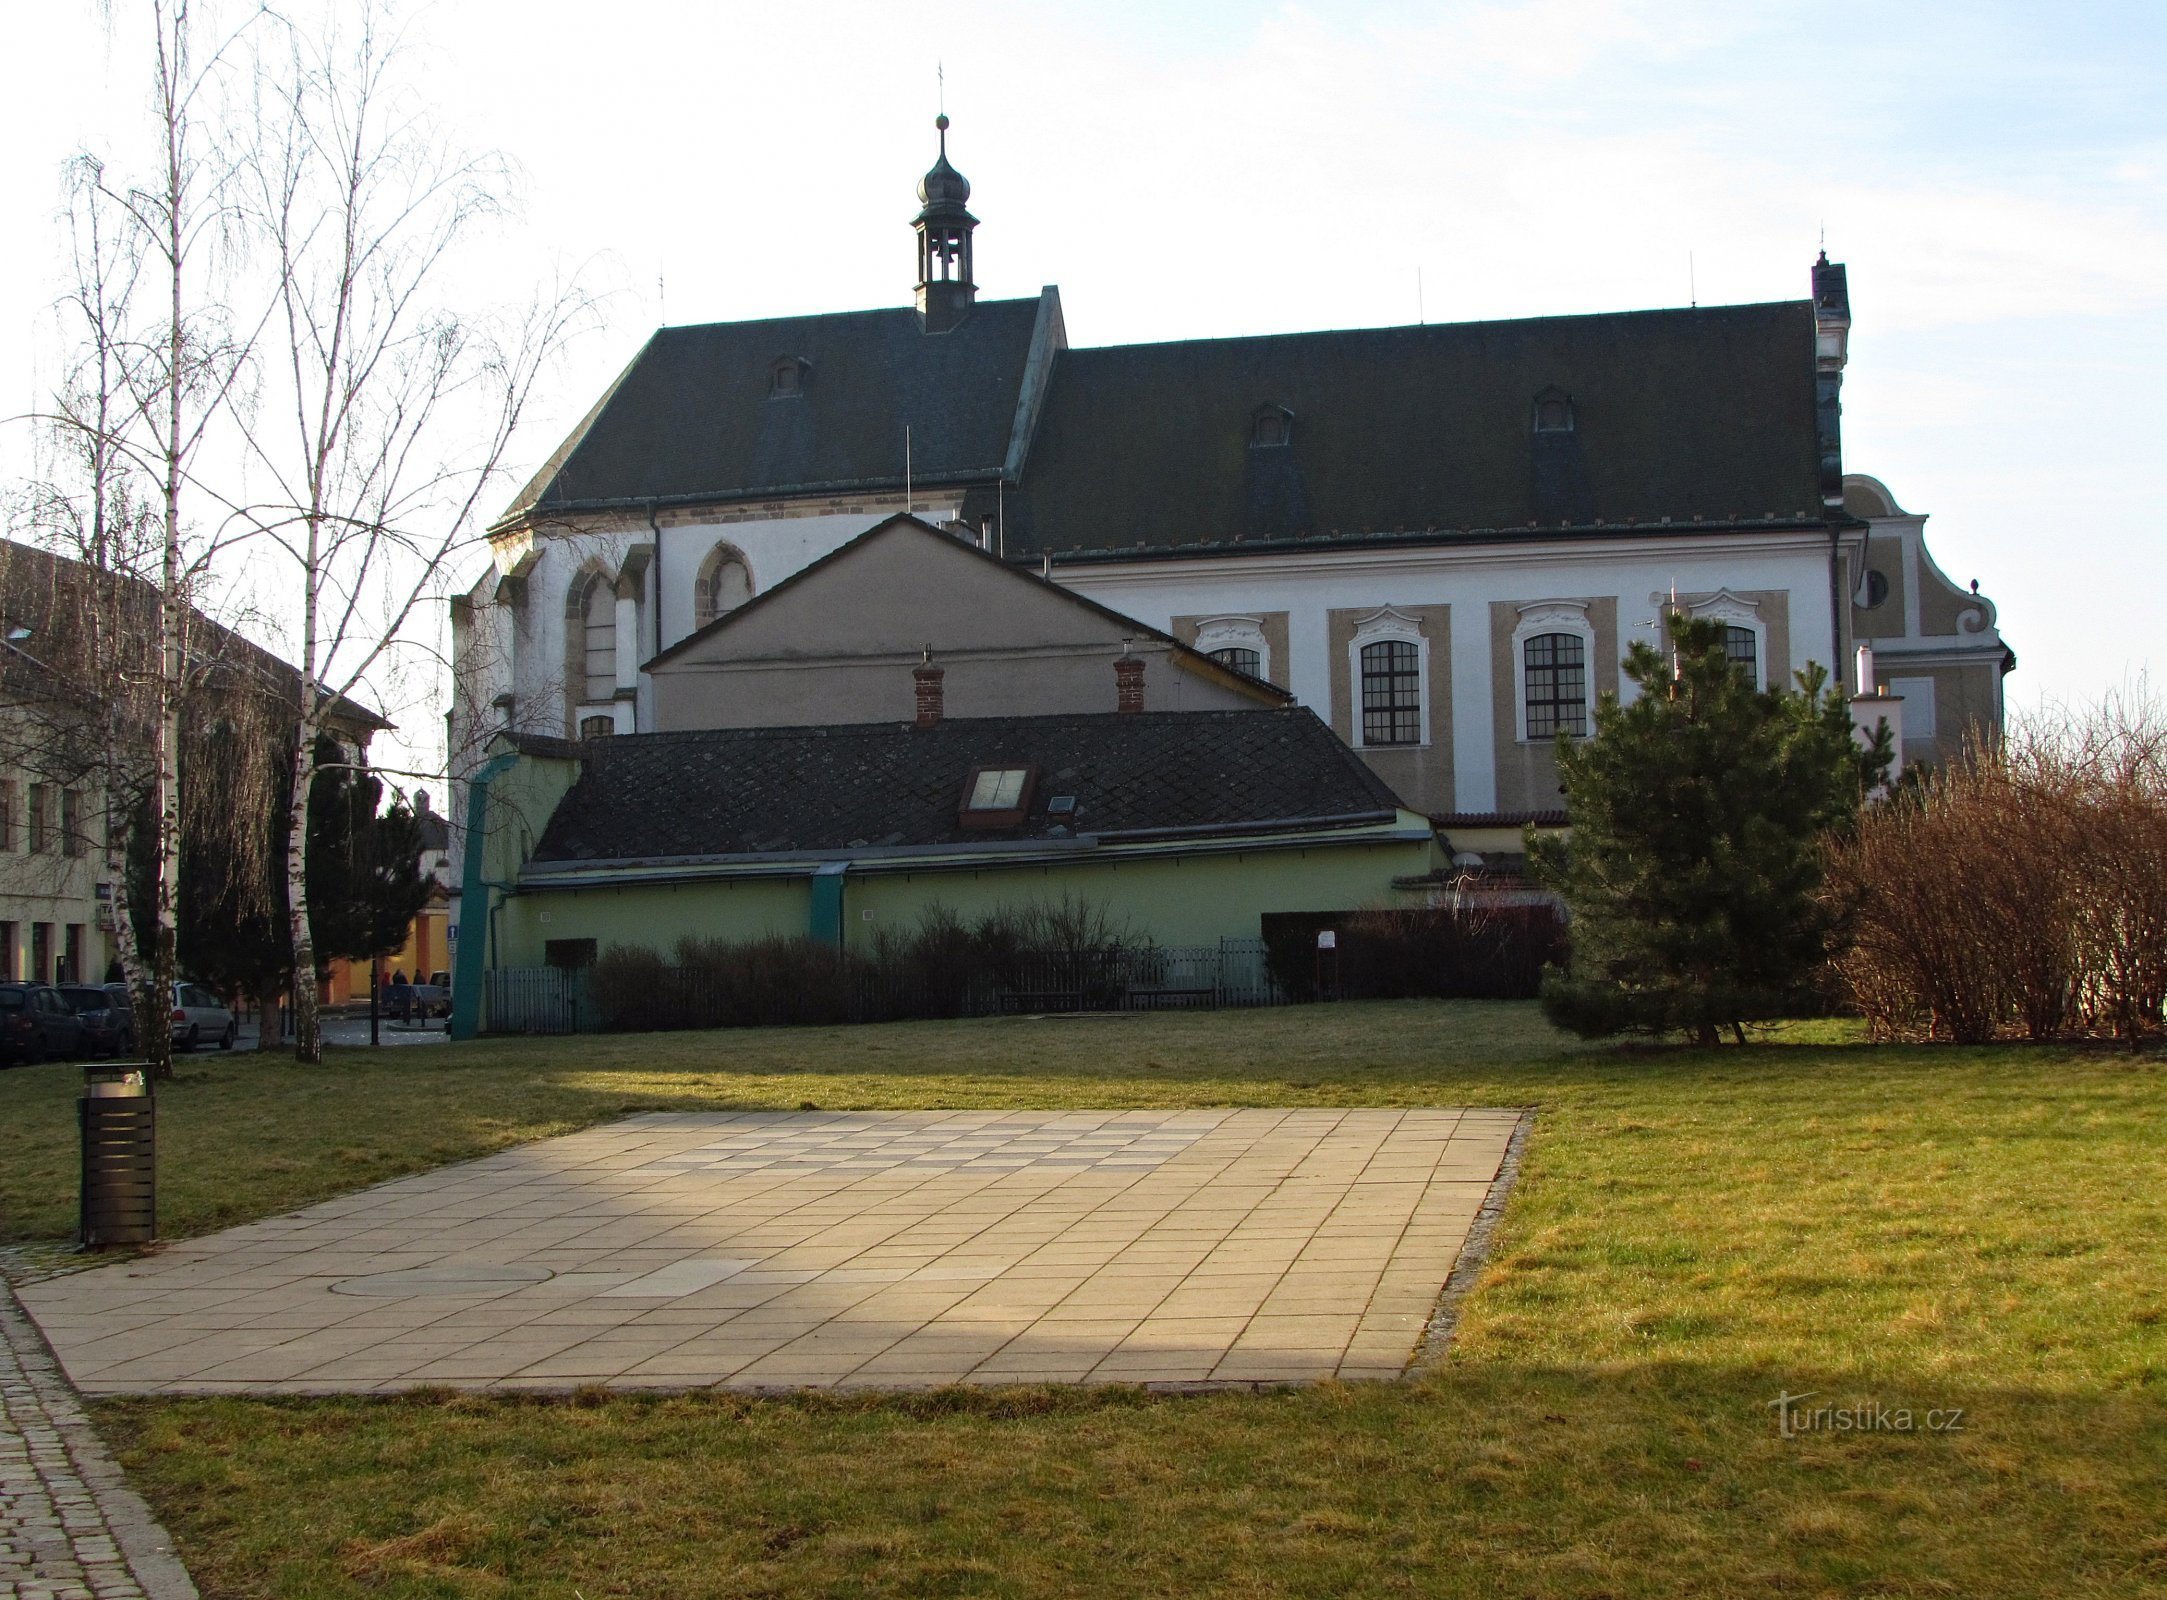 Uničov - Biserica Înălțarea Sfintei Cruci și o fostă mănăstire minorită